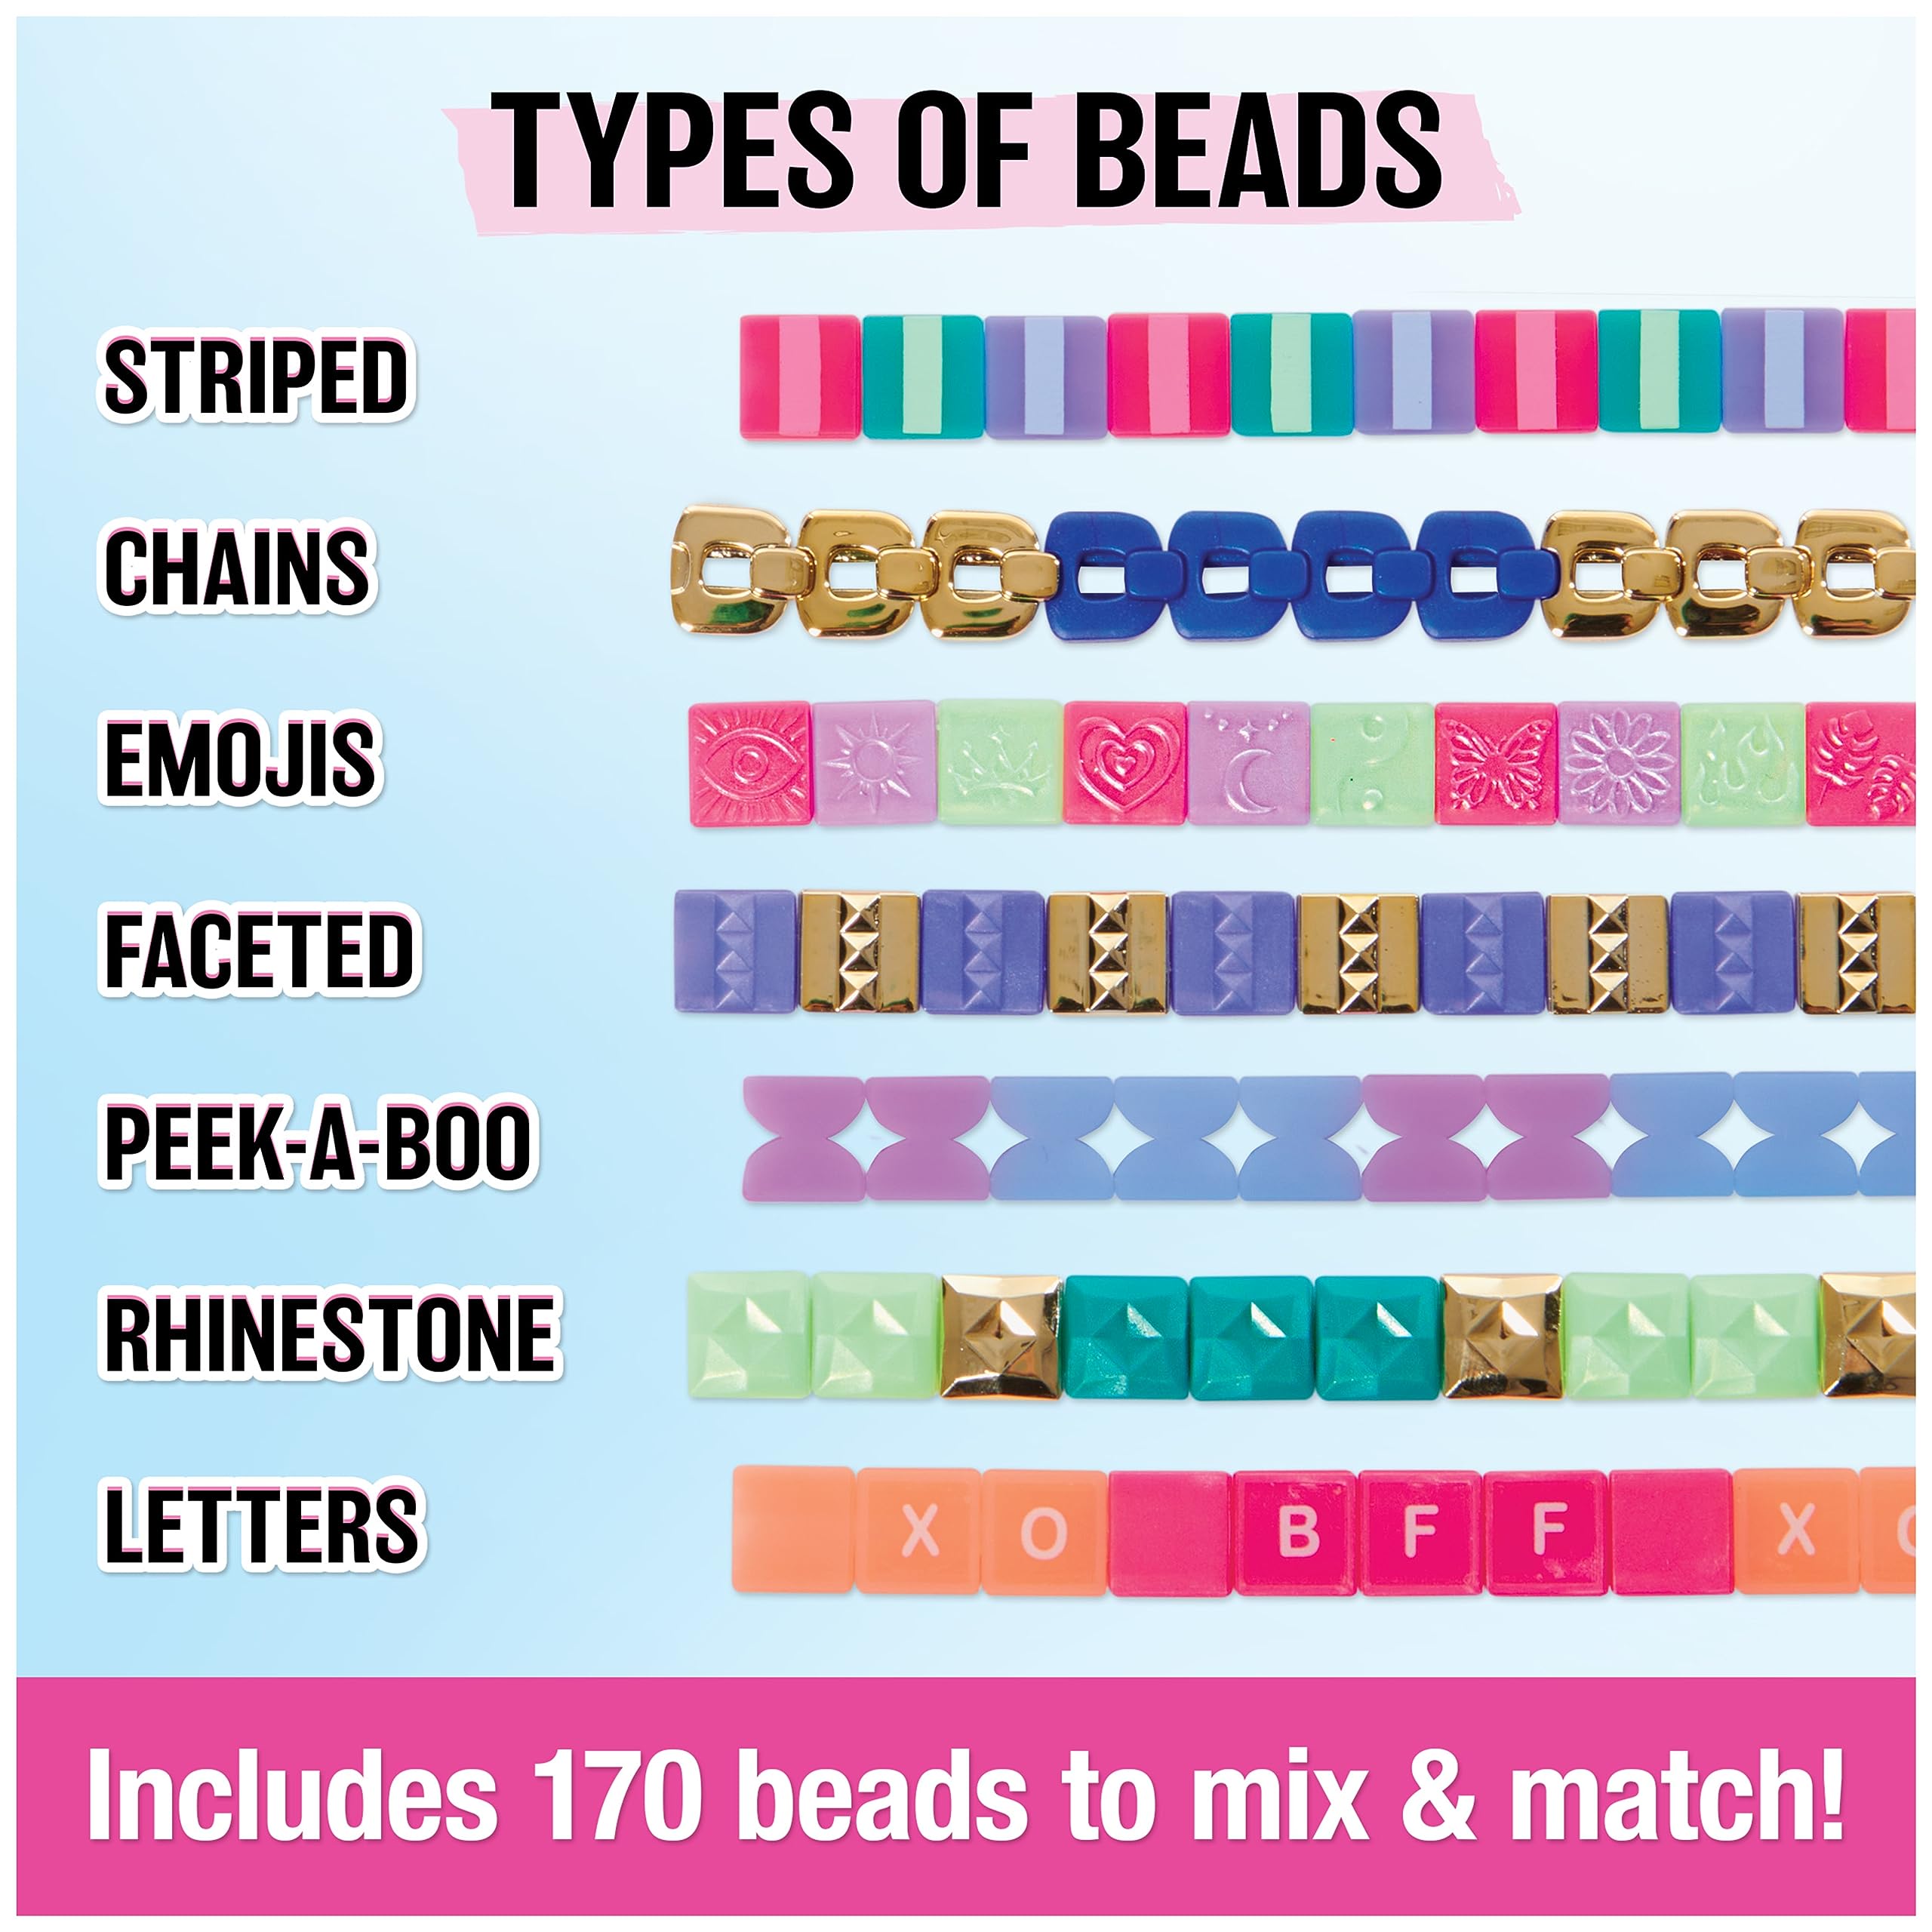 Cool Maker PopStyle Bracelet Maker, 170 Stylish Beads, 10 Bracelets, Storage, Friendship Bracelet Making Kit, DIY Arts & Crafts Kids Toys for Girls